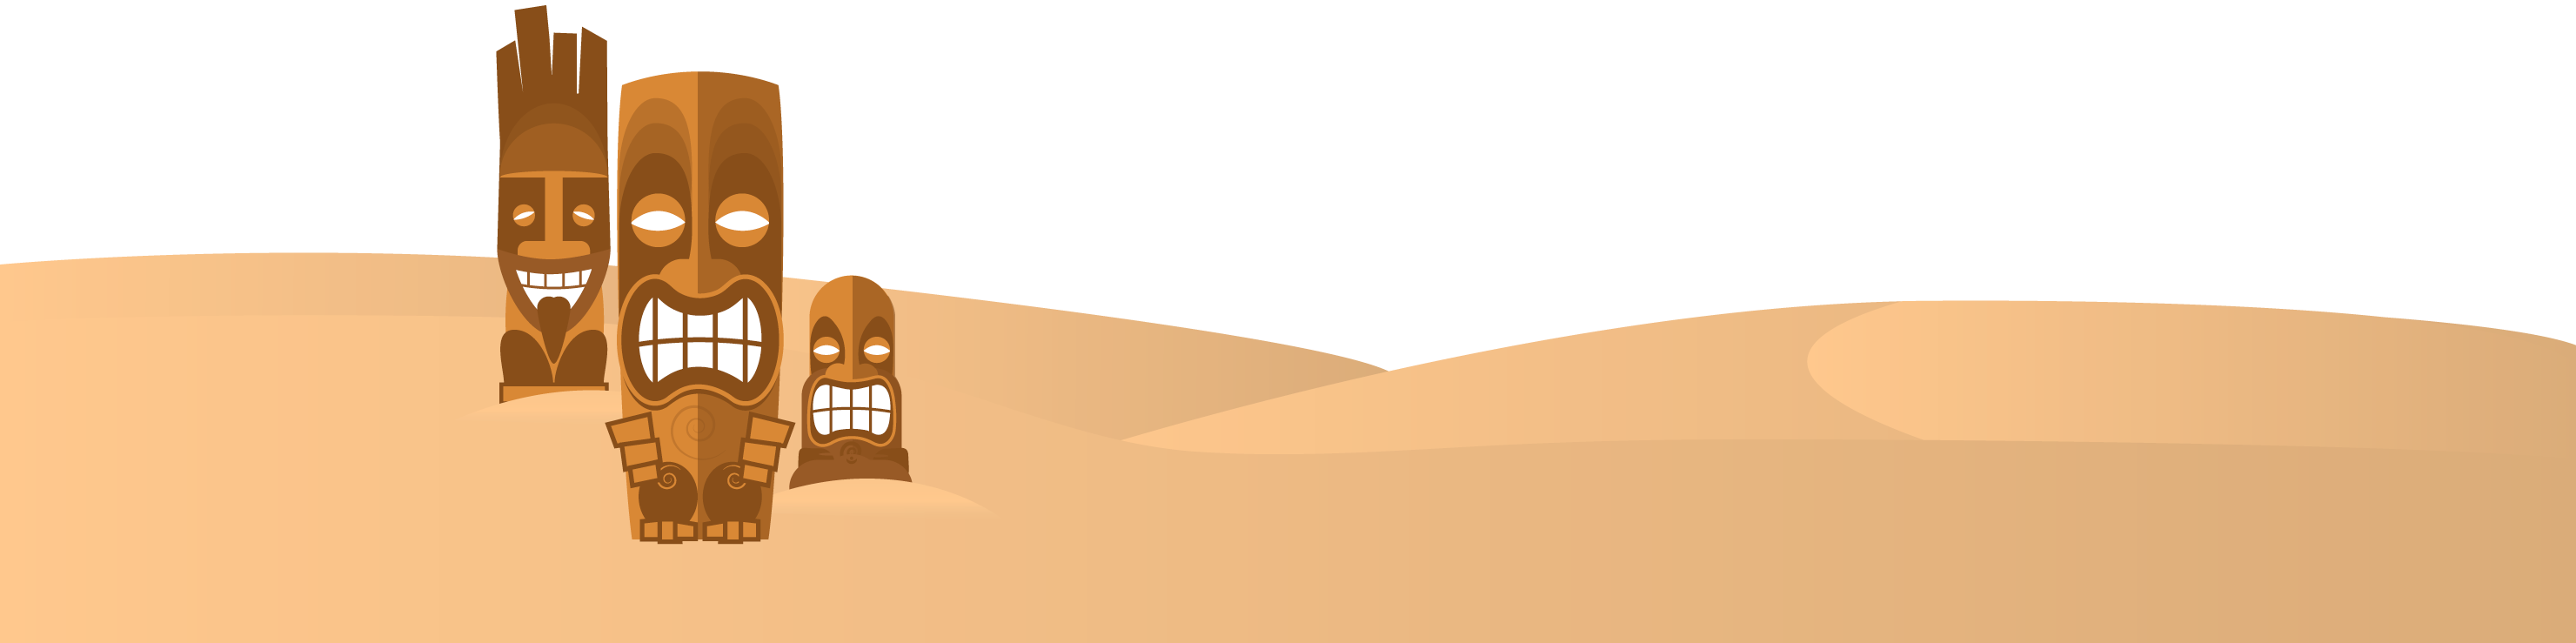 desert clipart arabic desert